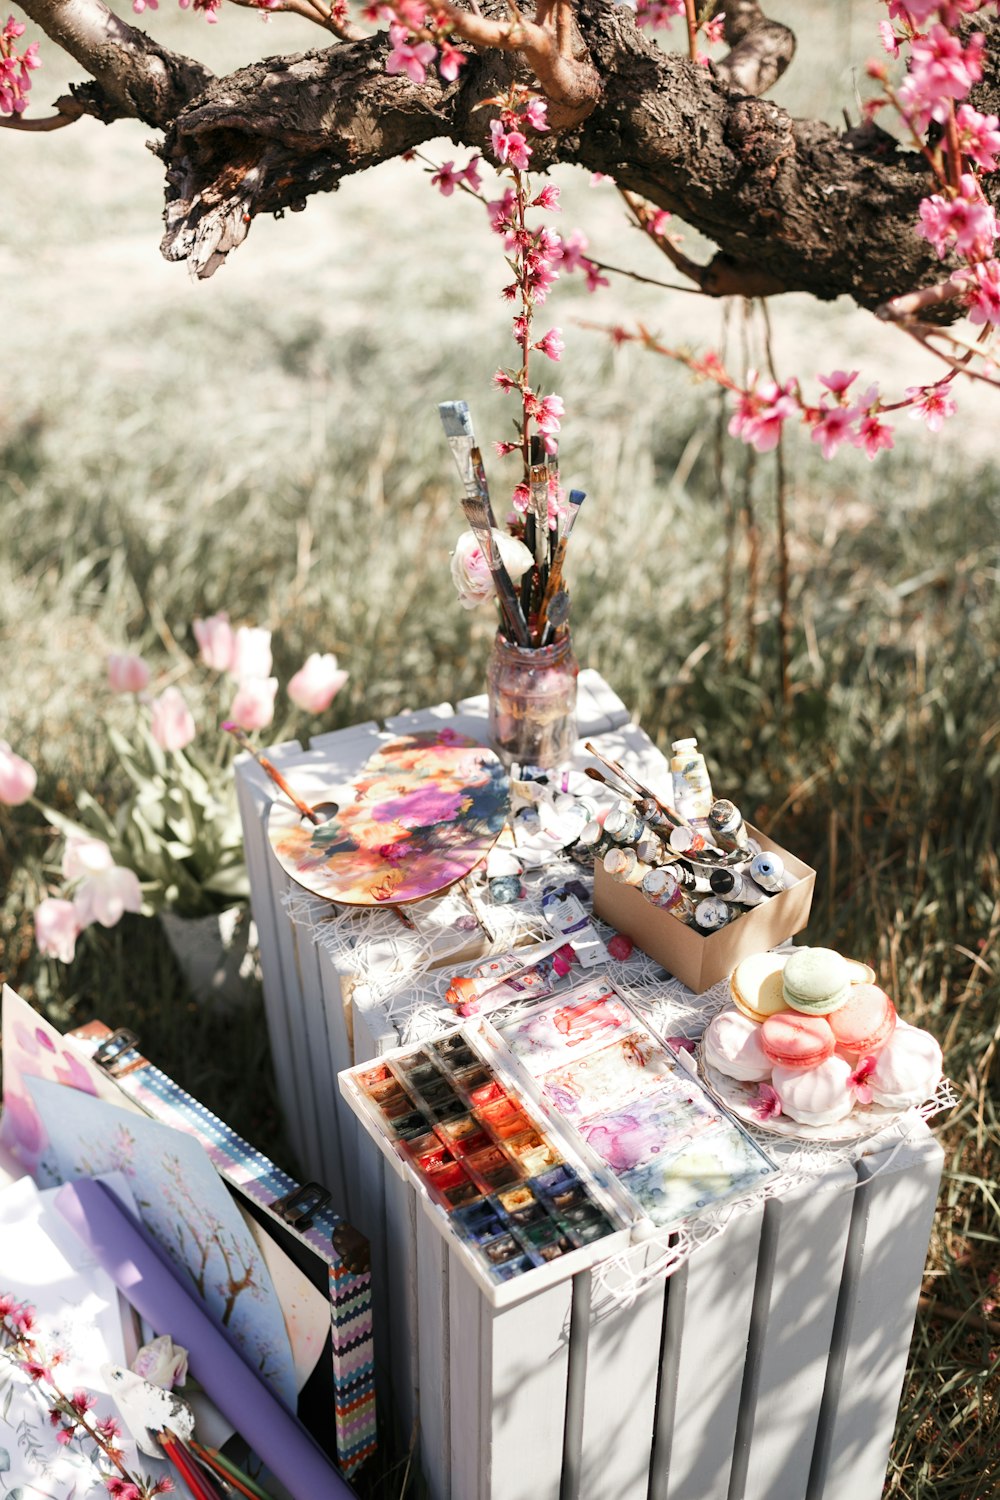 Una mesa cubierta de suministros de arte debajo de un árbol